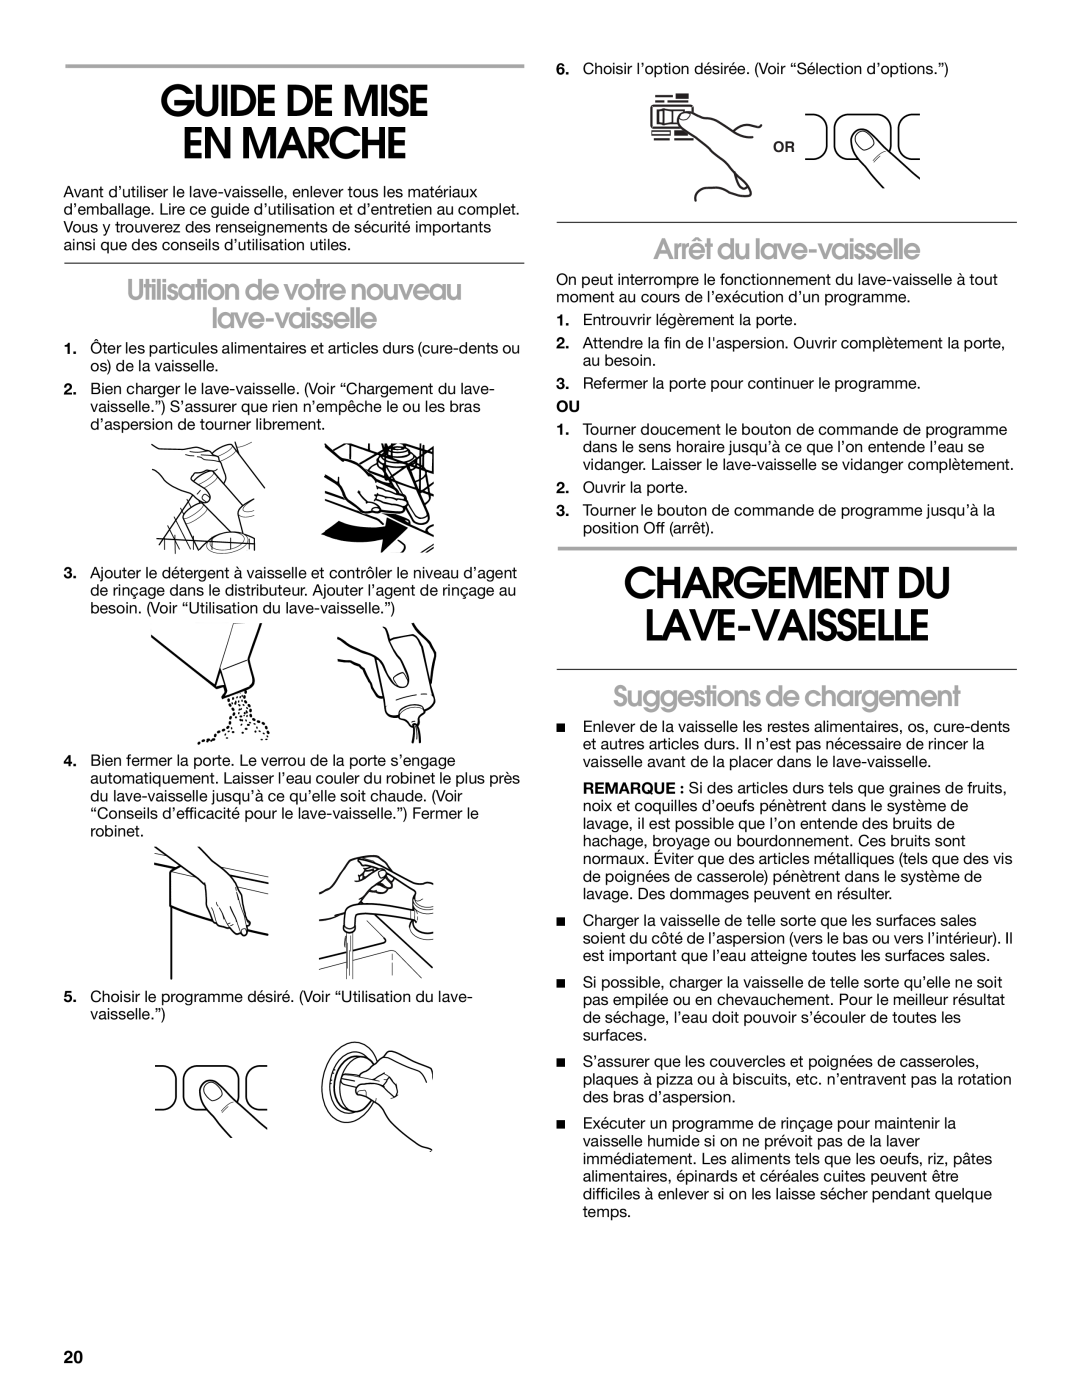 Whirlpool RUD4000 manual Guide De Mise En Marche, Chargement Du Lave-Vaisselle, Utilisation de votre nouveau lave-vaisselle 